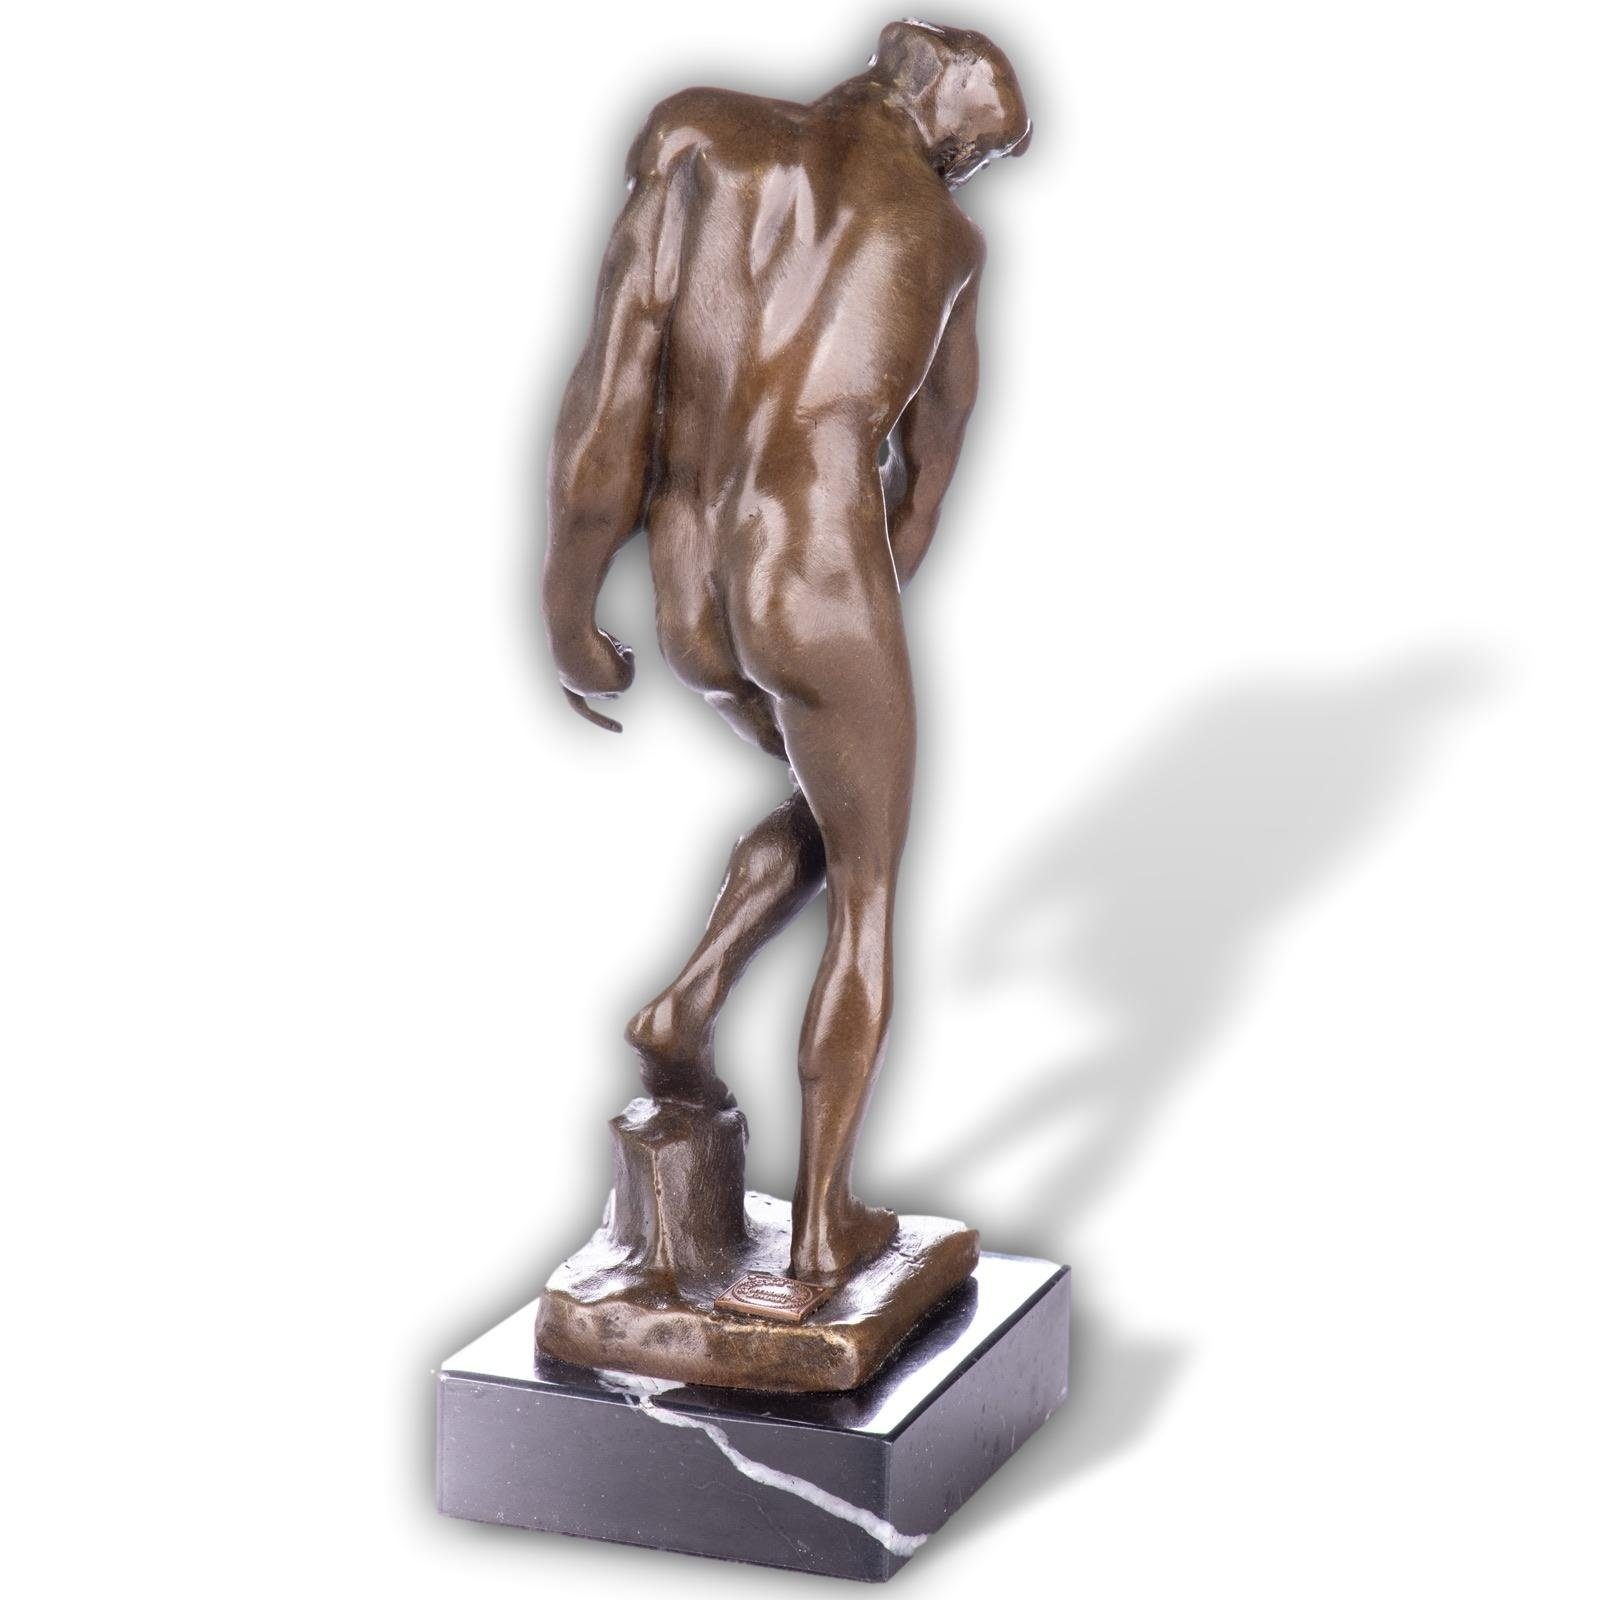 Aubaho Skulptur Skulptur Bronze nach Adam Rodin Kopie 20cm Akt Replik Antik-Stil Figur